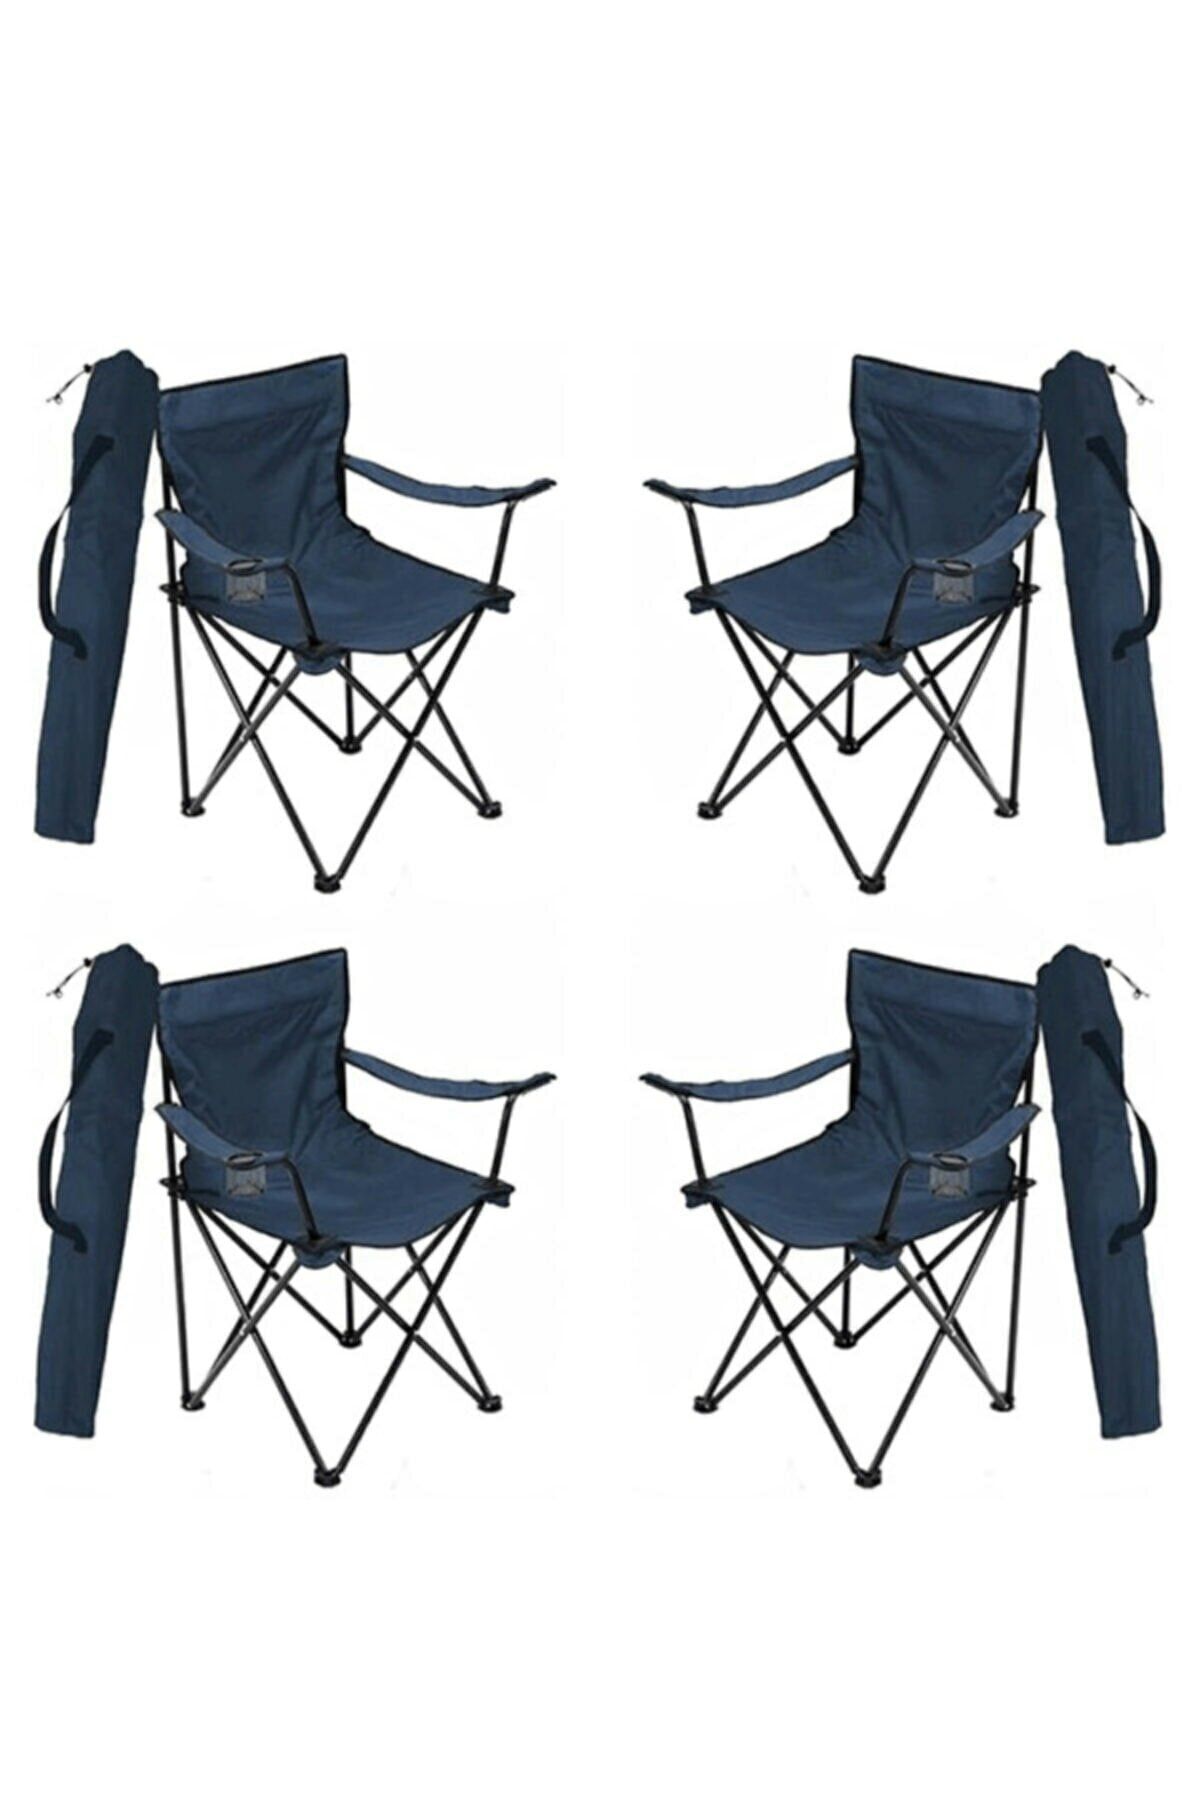 Moccastyle Kamp Sandalyesi Katlanır Sandalye Bahçe Koltuğu Piknik Plaj Balkon Sandalyesi 4 Adet